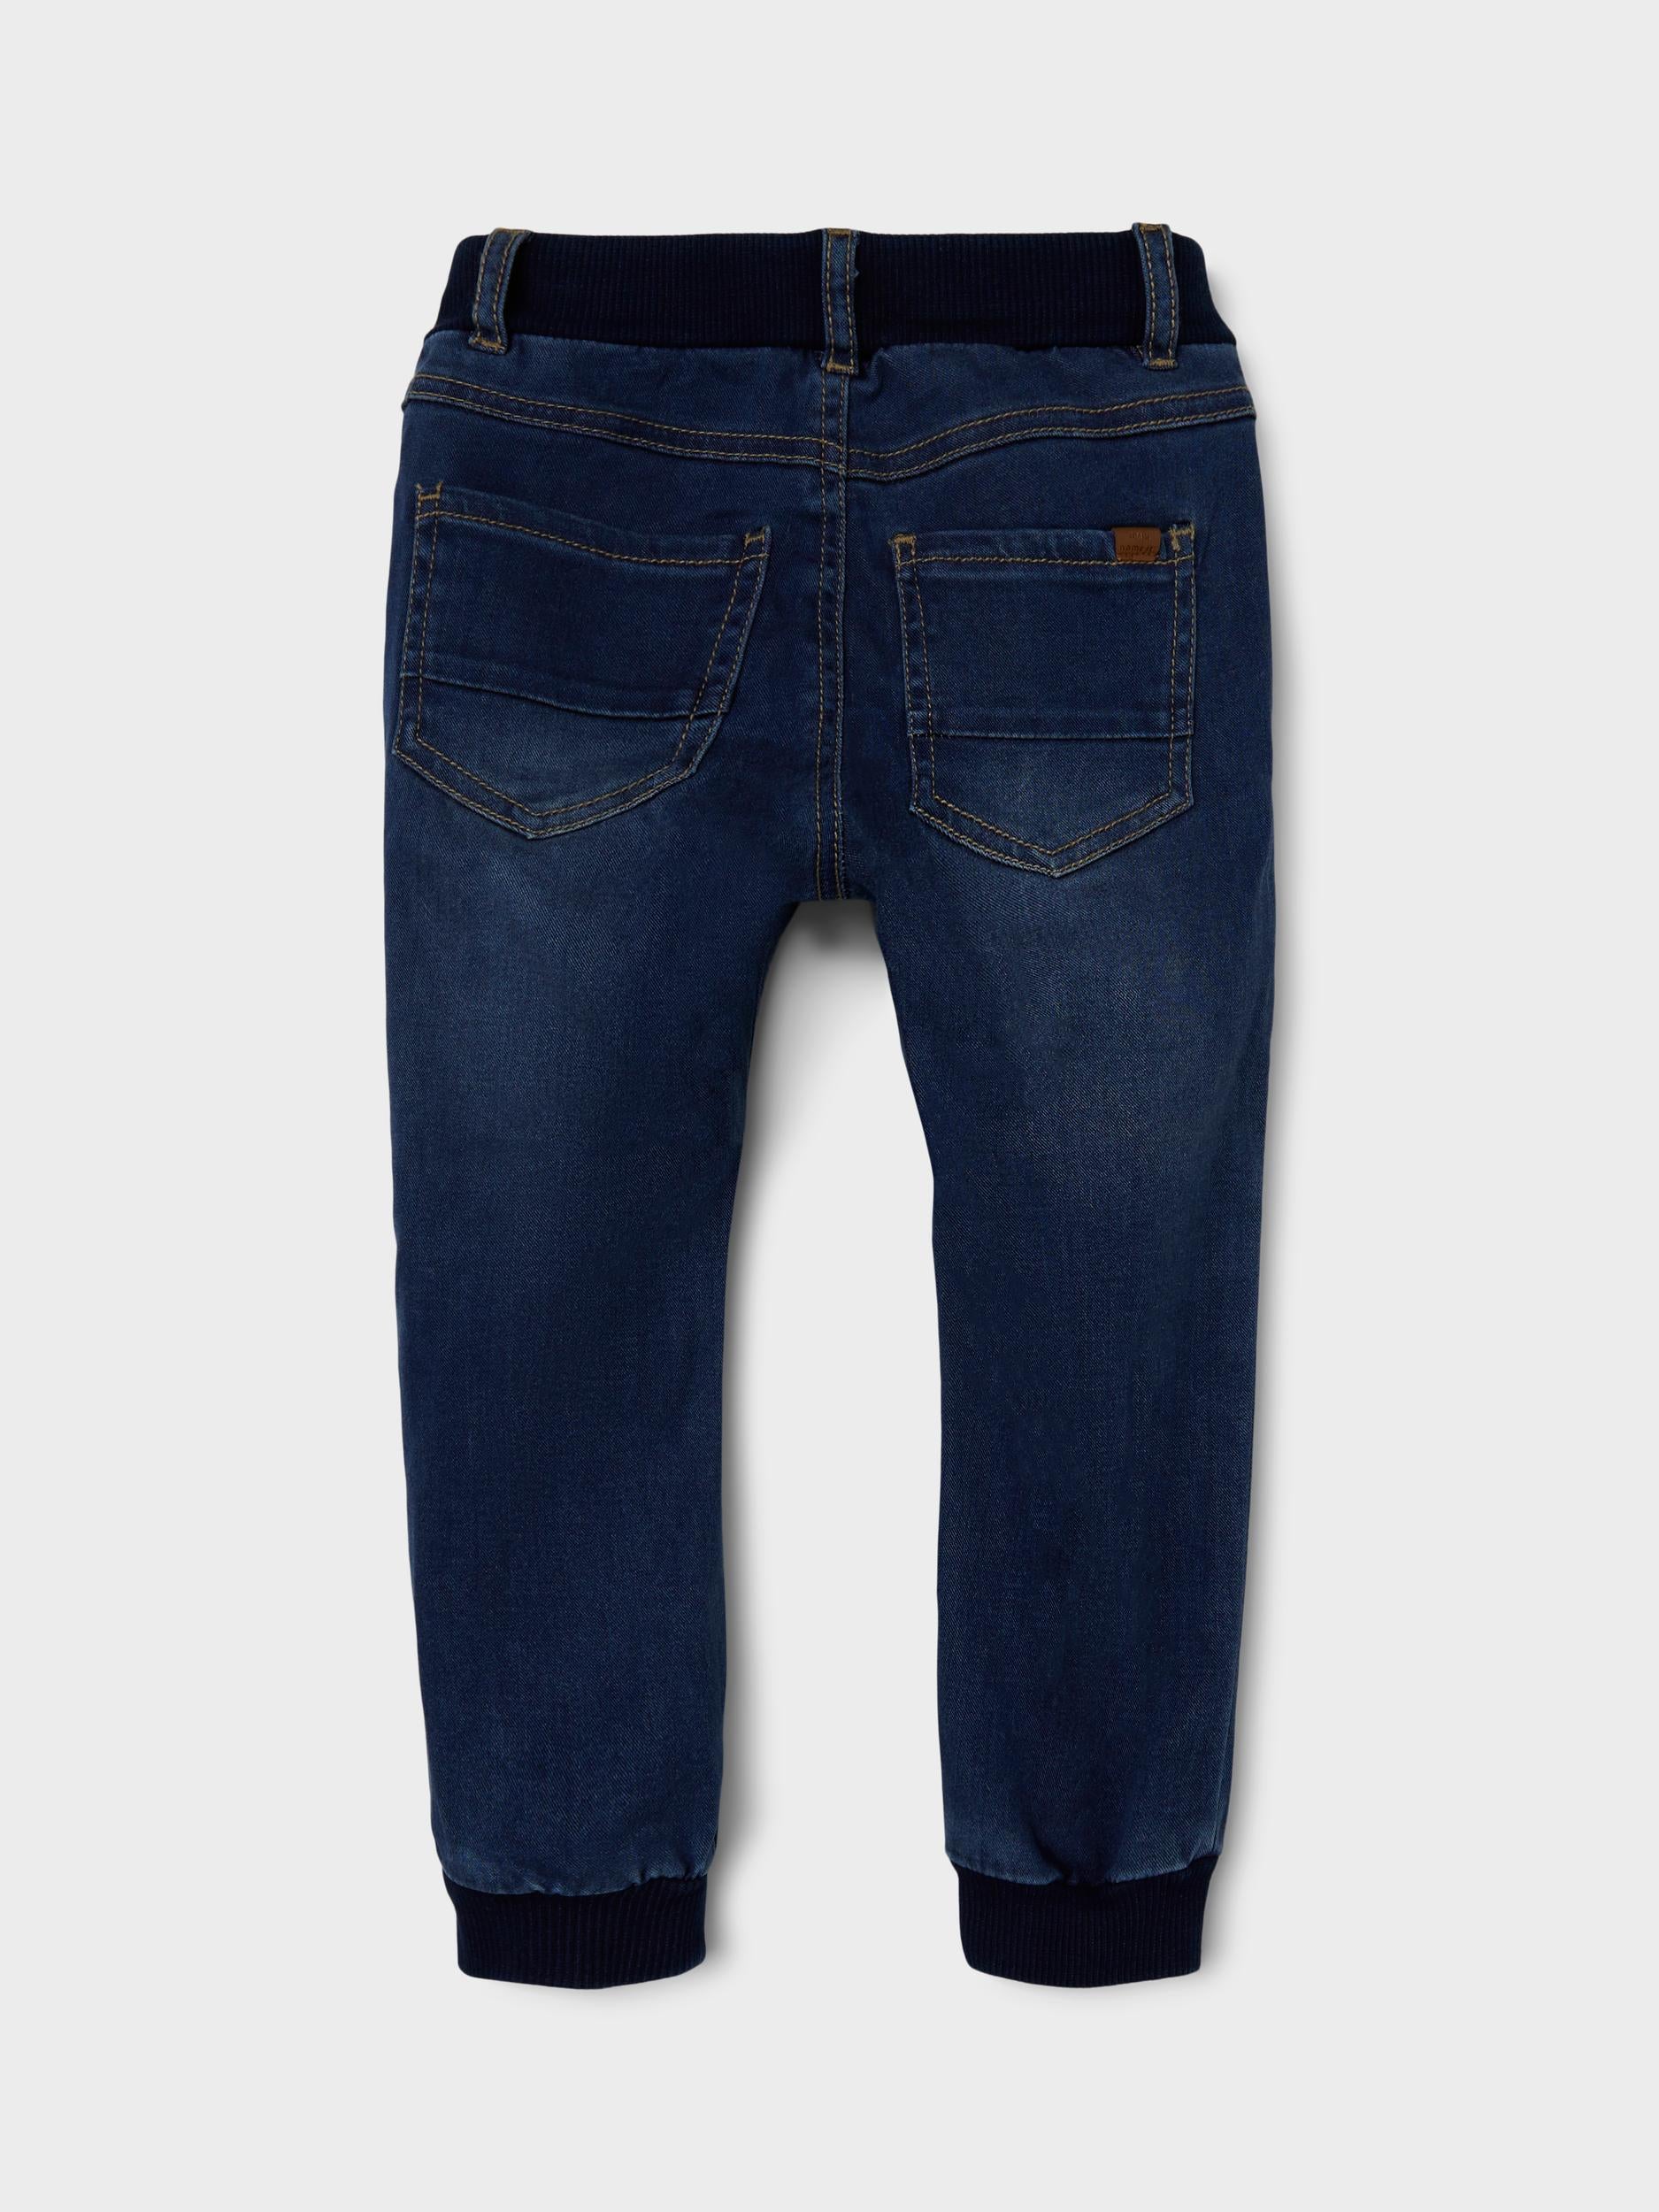 Ben Baggy Round Jeans 1132 - Dark Blue Denim-Back View